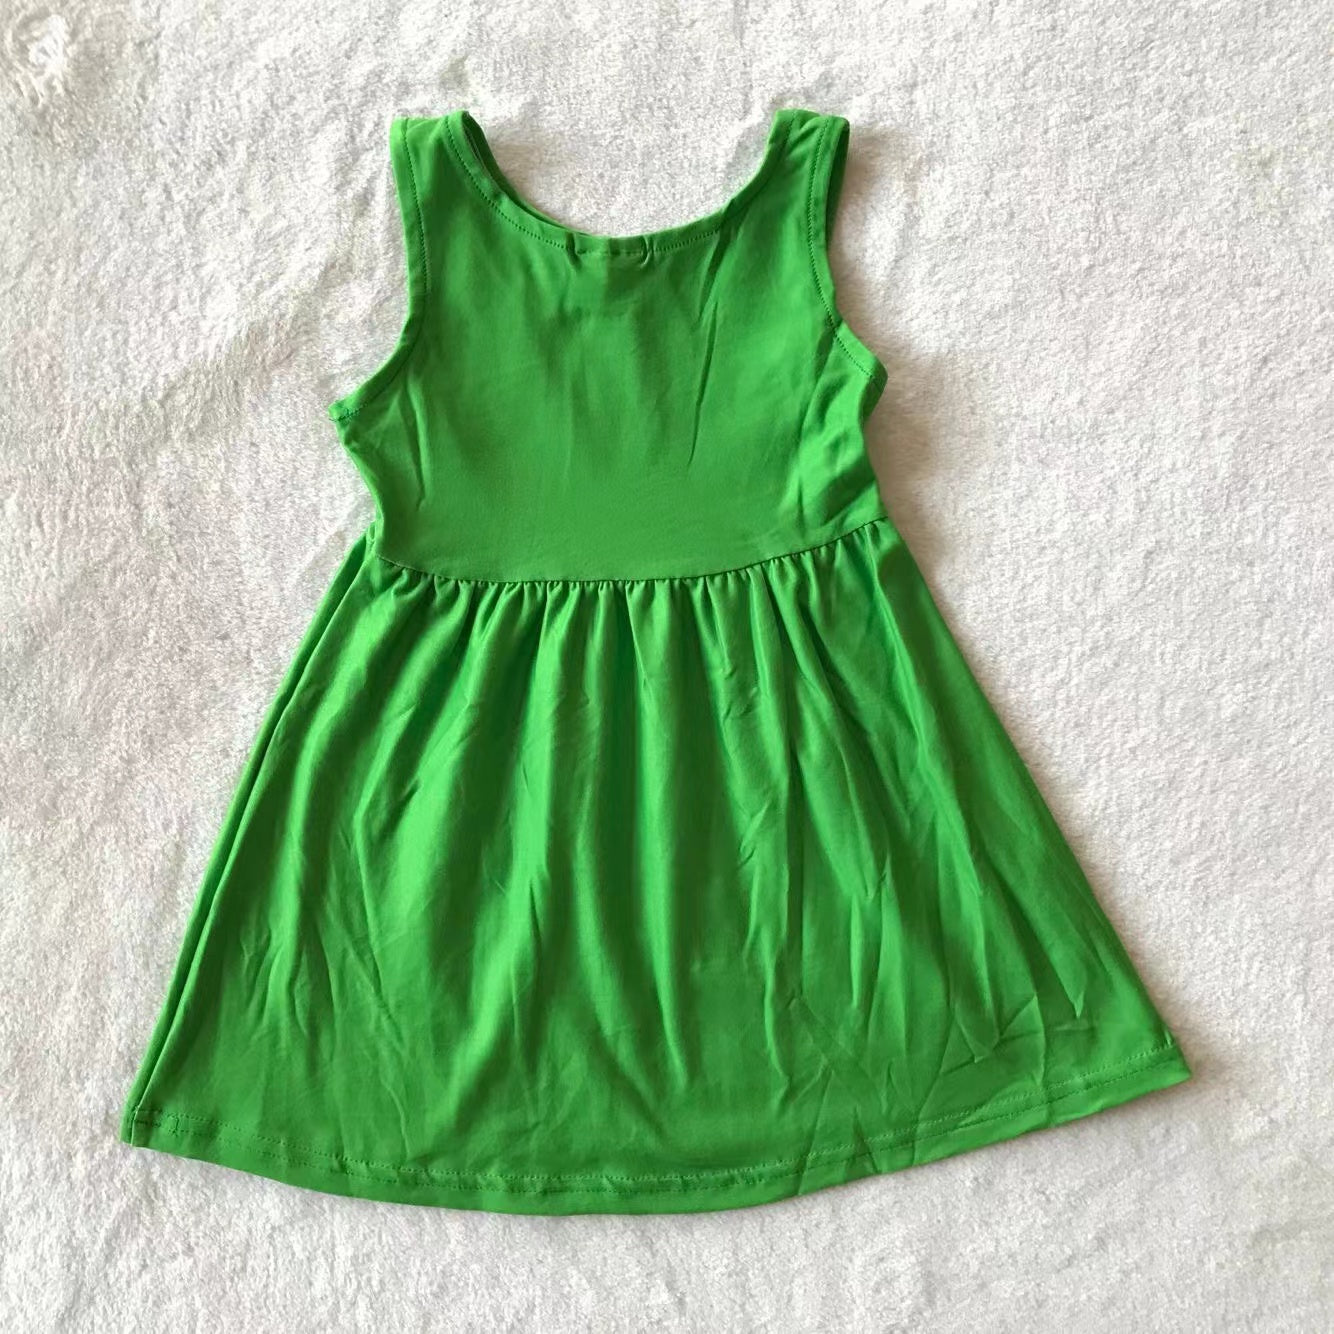 Baby girls green sleeveless dresses